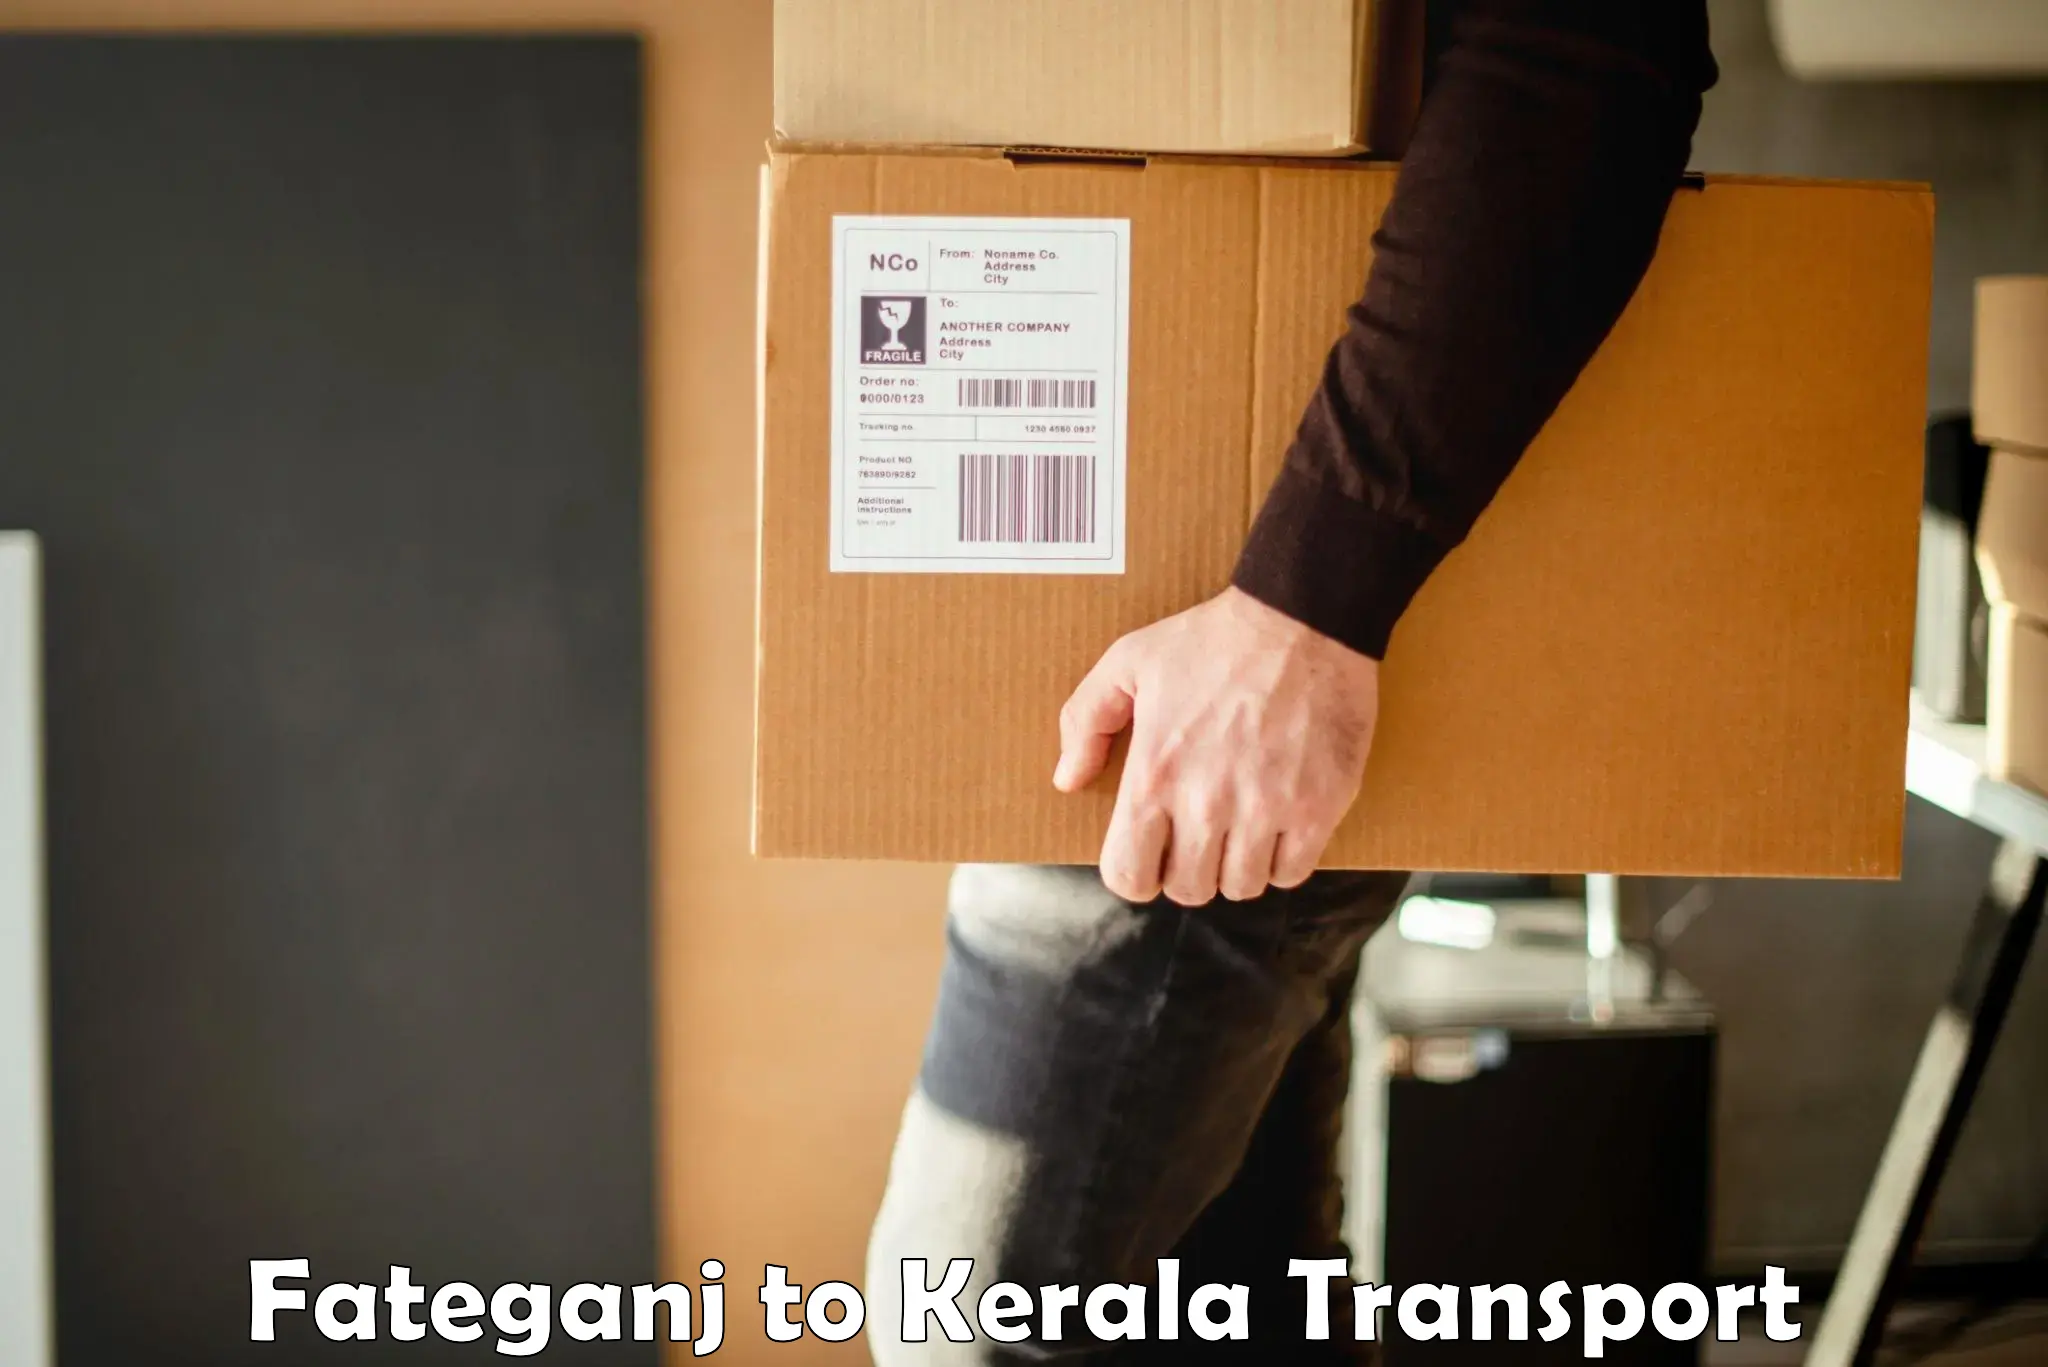 Furniture transport service Fateganj to Cherpulassery